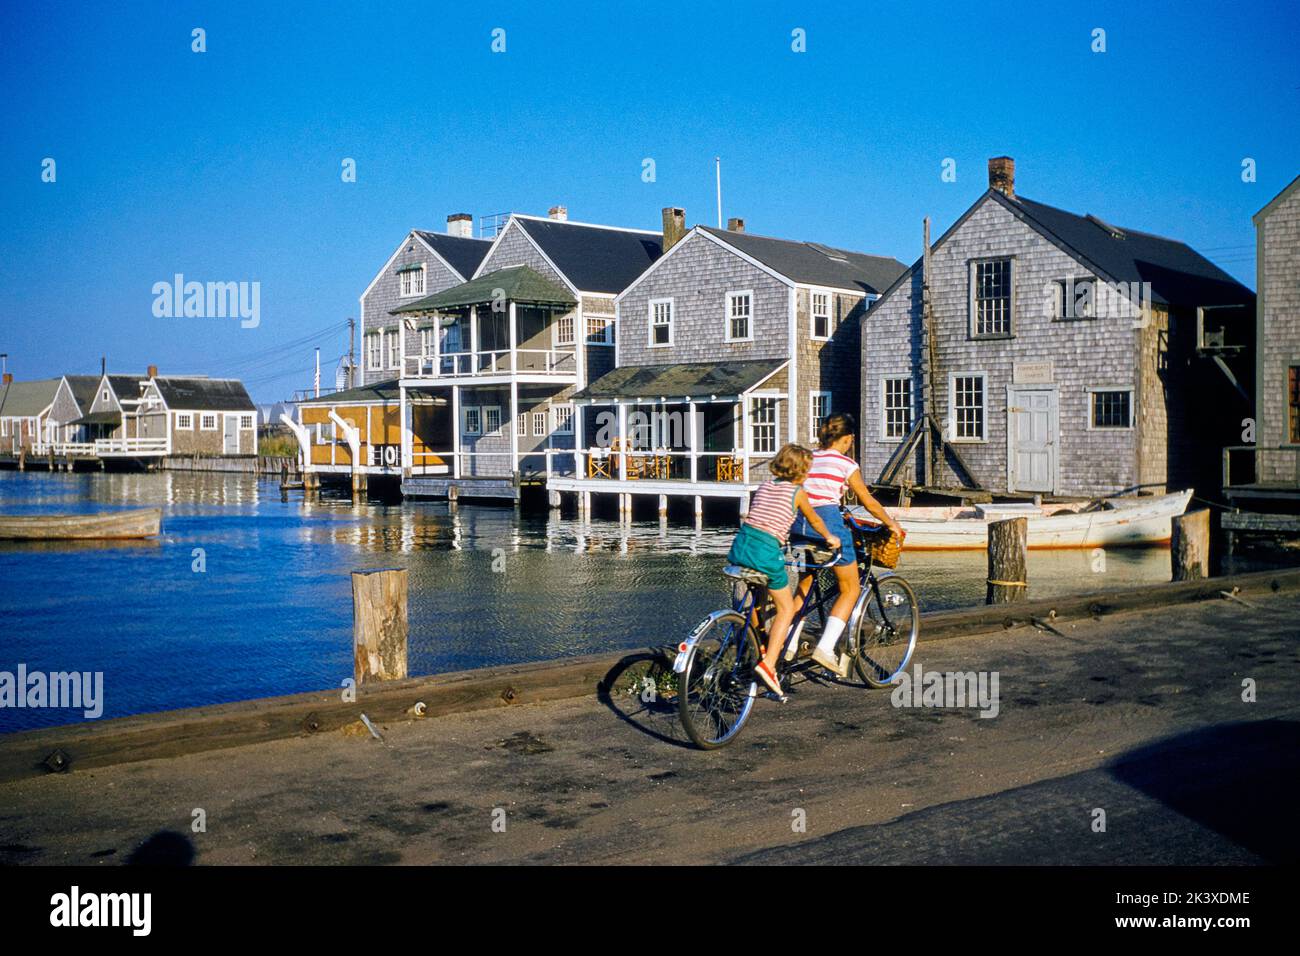 Due giovani ragazze in bicicletta tandem, Nantucket, Massachusetts, USA, toni Frissell Collection, Settembre 1957 Foto Stock